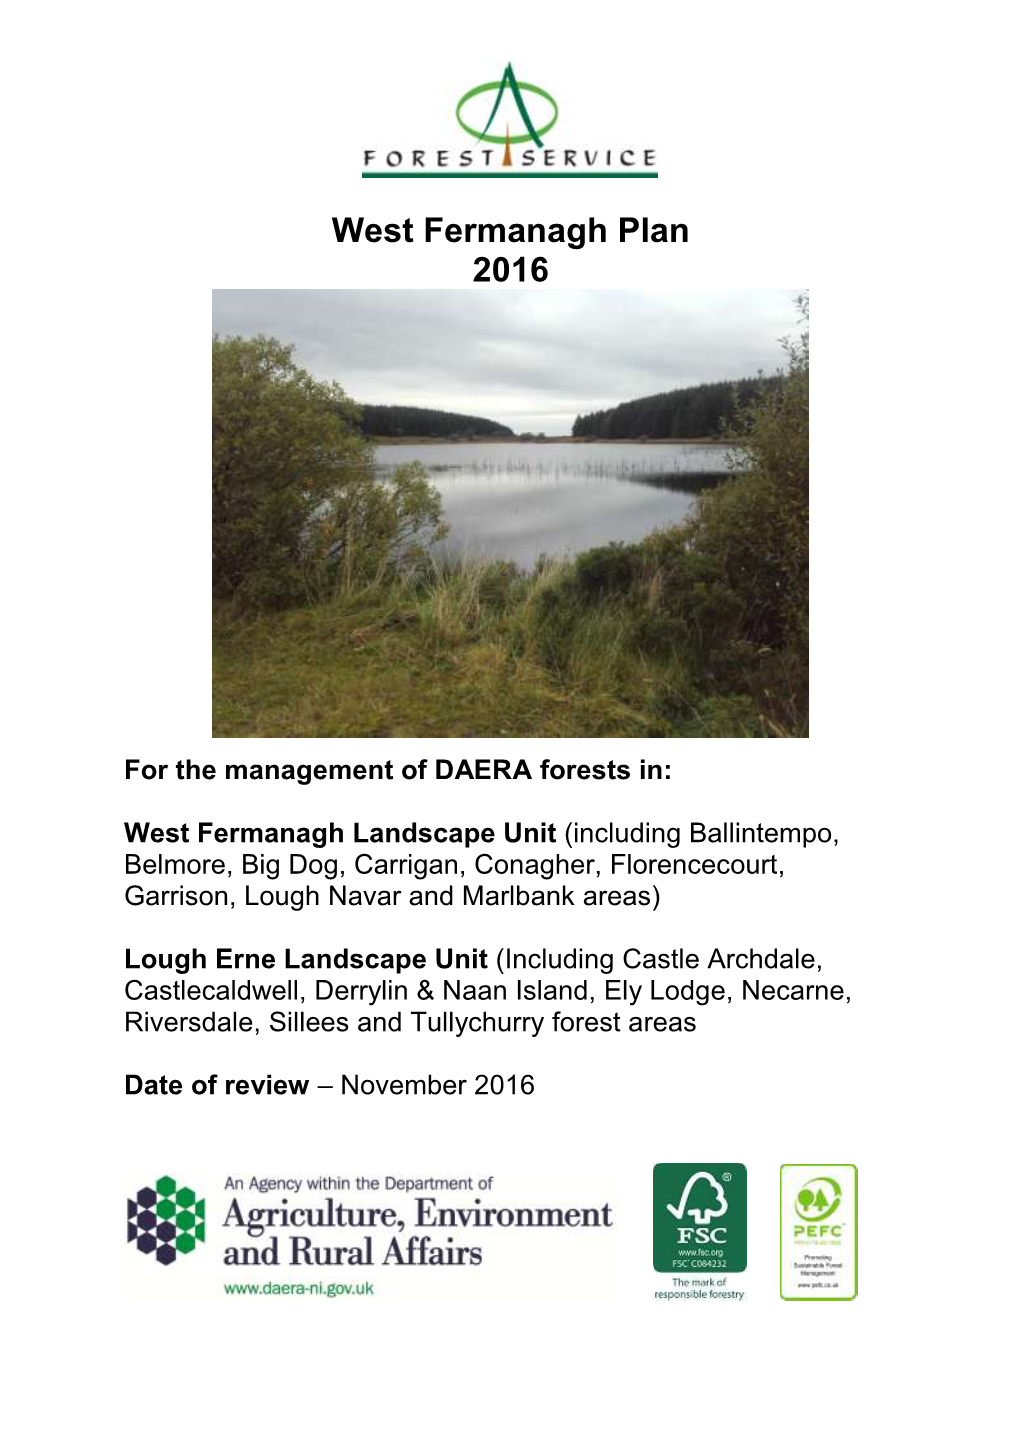 West Fermanagh Plan 2016